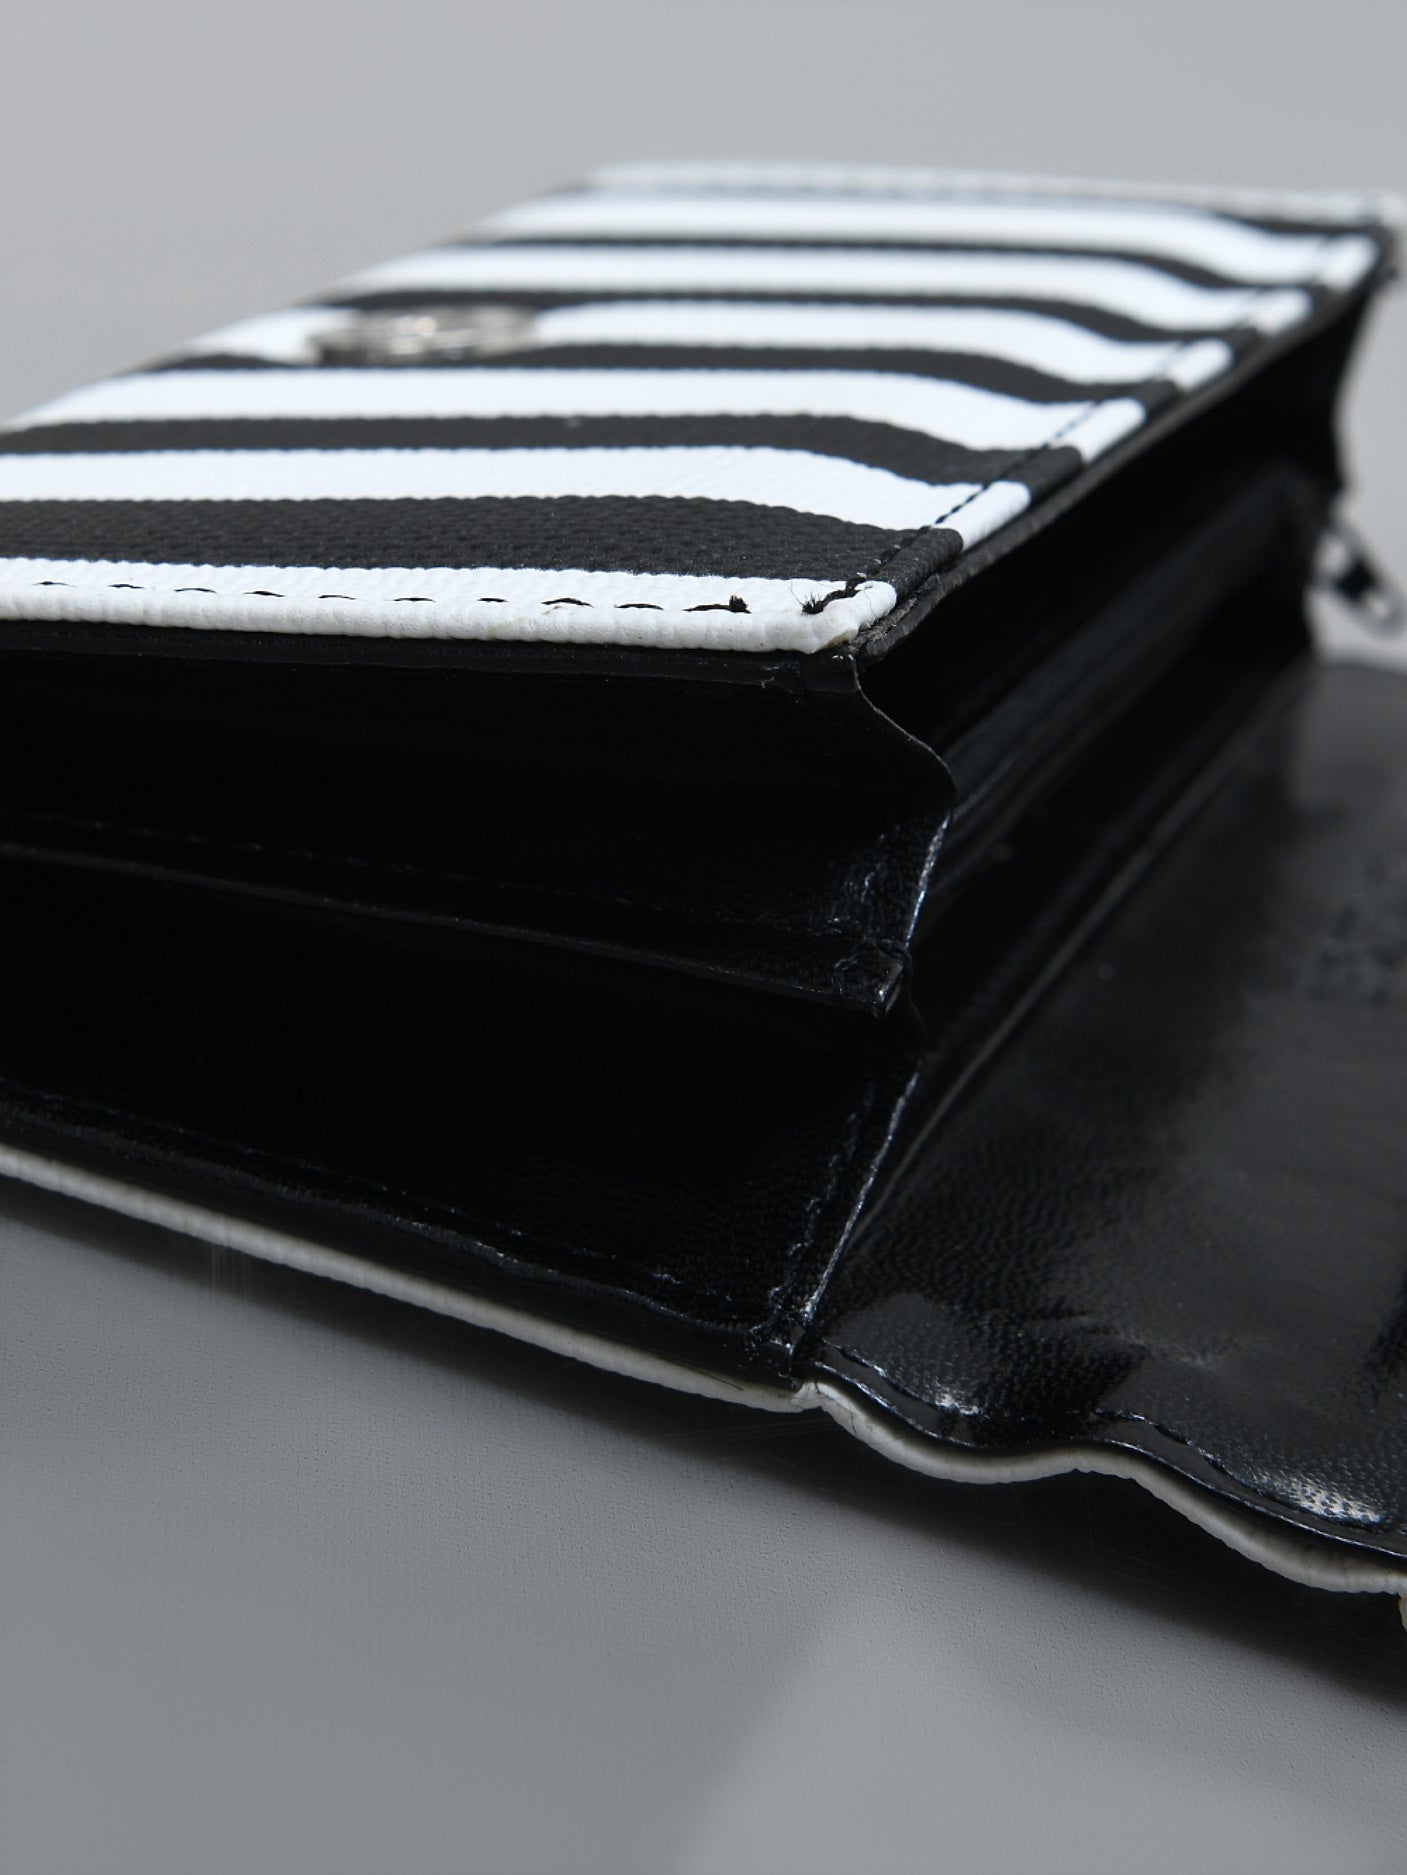 Striped Wallet